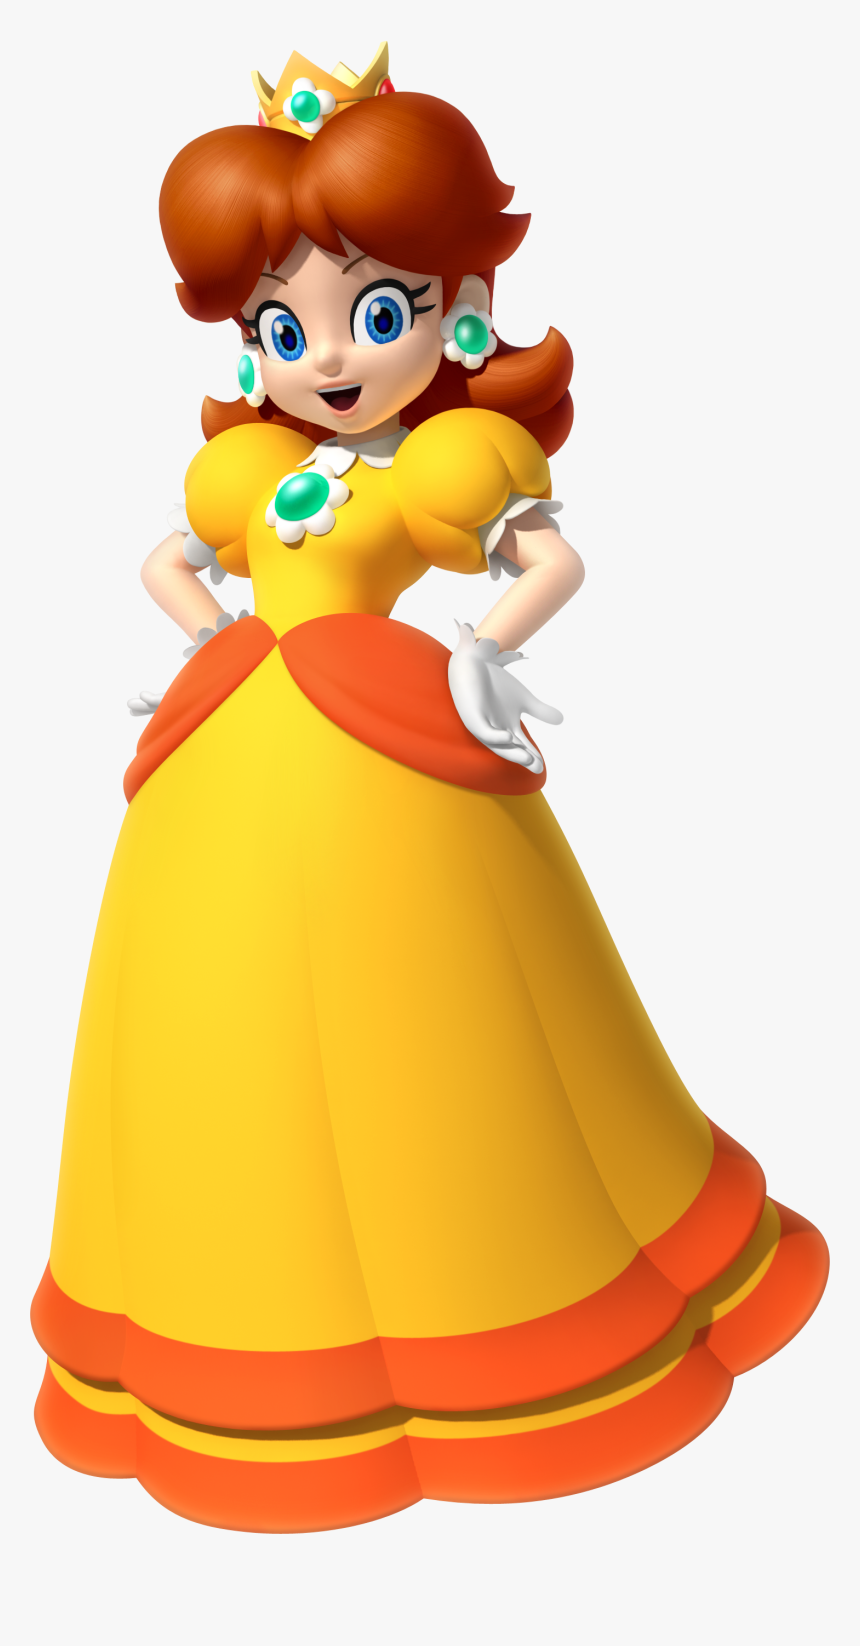 Princess Daisy - Super Mario Princess Daisy, HD Png Download, Free Download